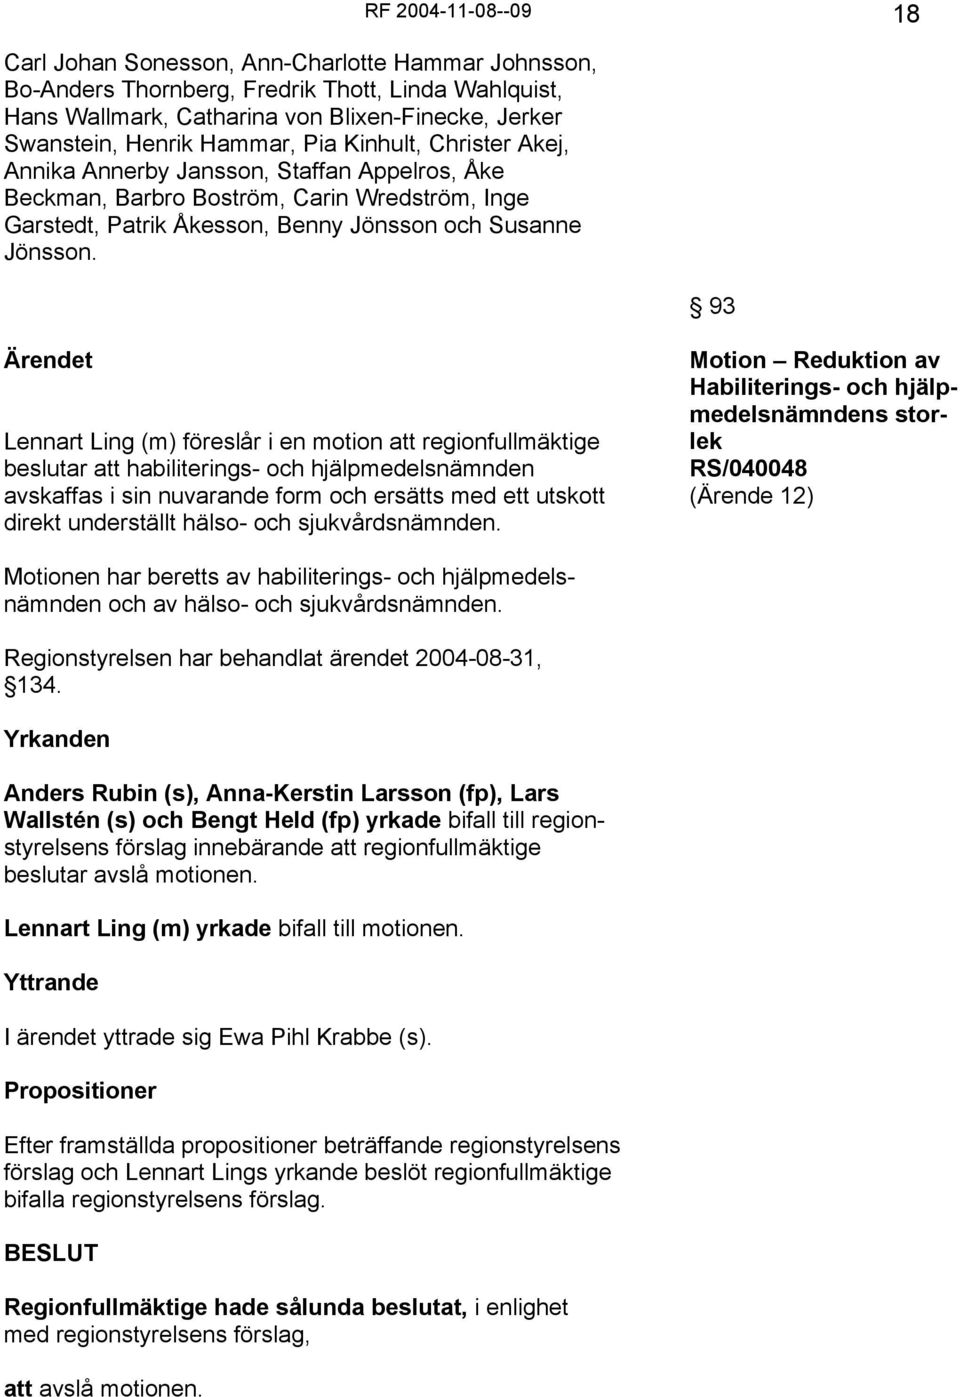 RF 2004-11-08--09 18 93 Ärendet Lennart Ling (m) föreslår i en motion att regionfullmäktige beslutar att habiliterings- och hjälpmedelsnämnden avskaffas i sin nuvarande form och ersätts med ett